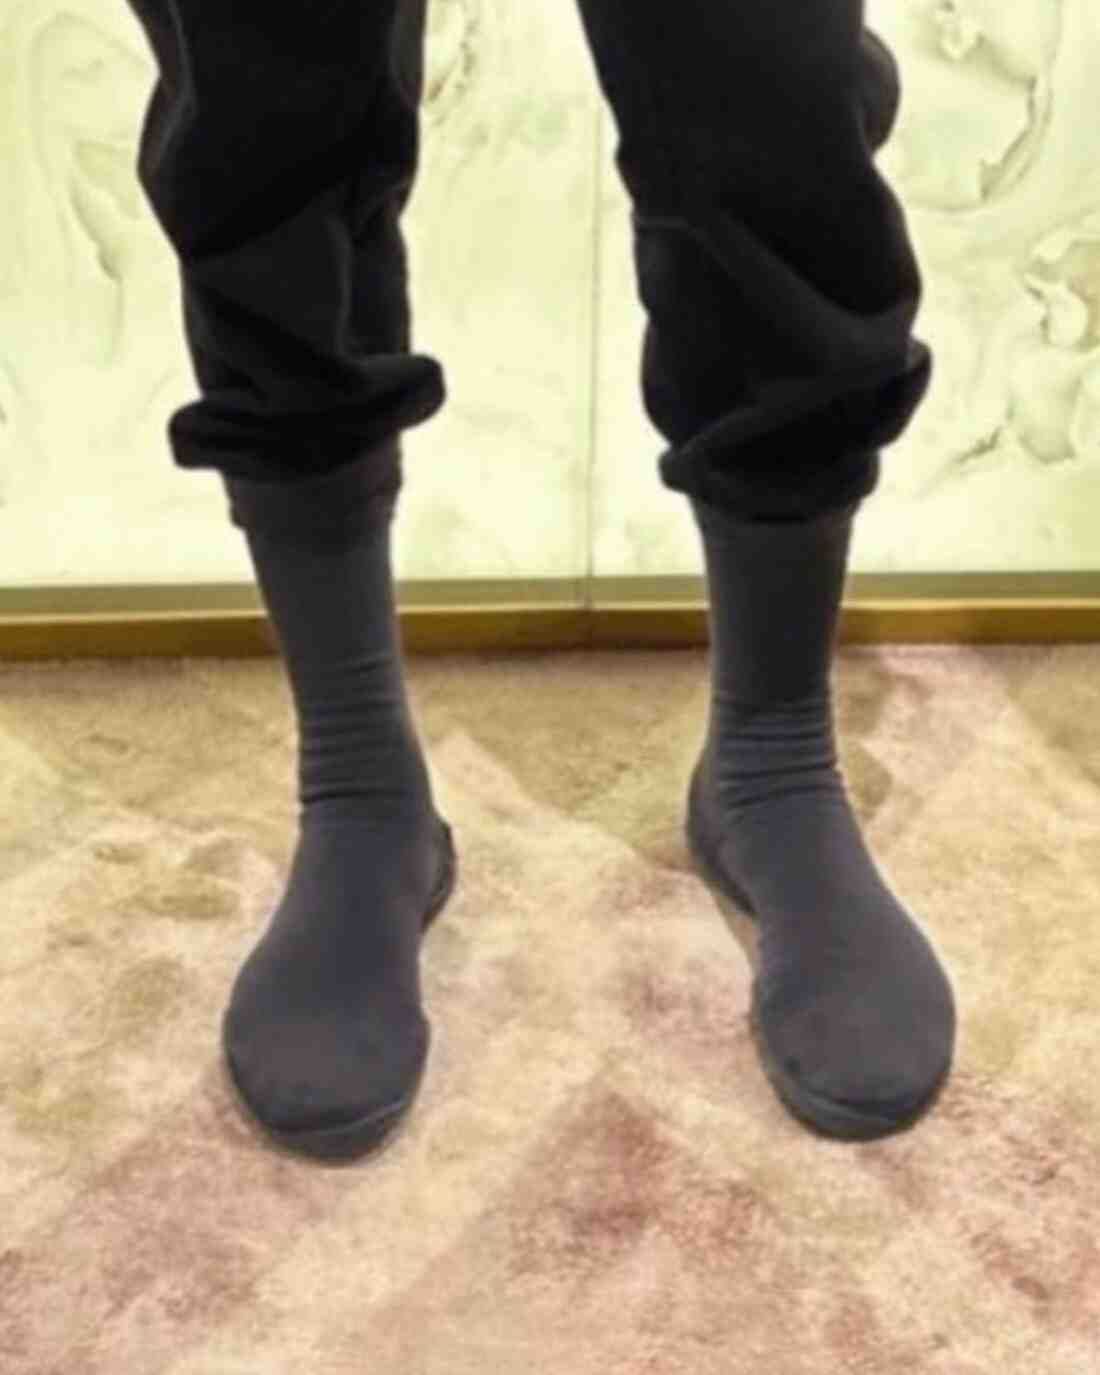 YEEZY, Kanye West - YZY Pods、Ye 的 "襪子鞋 "開始預售